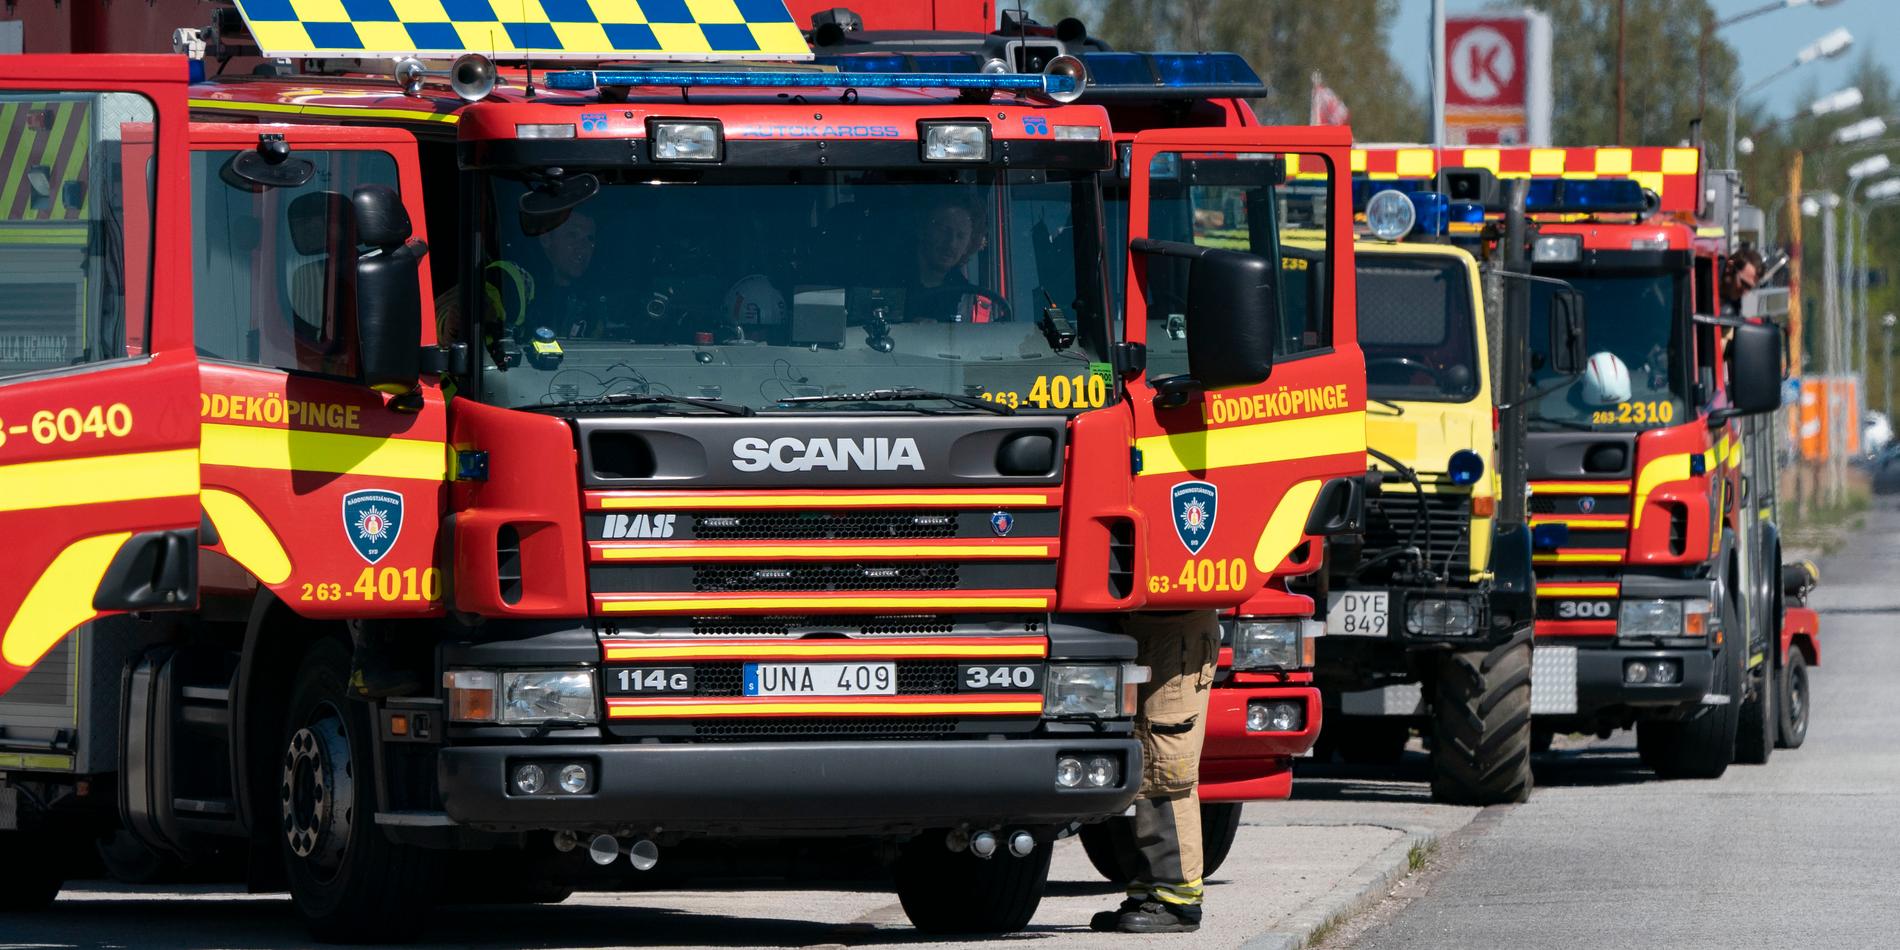 Ett 20-tal fordon från räddningstjänst i kranskommuner runt Malmö deltog, bland annat Lund, Löddeköpinge, Staffanstorp, Genarp och Burlöv.